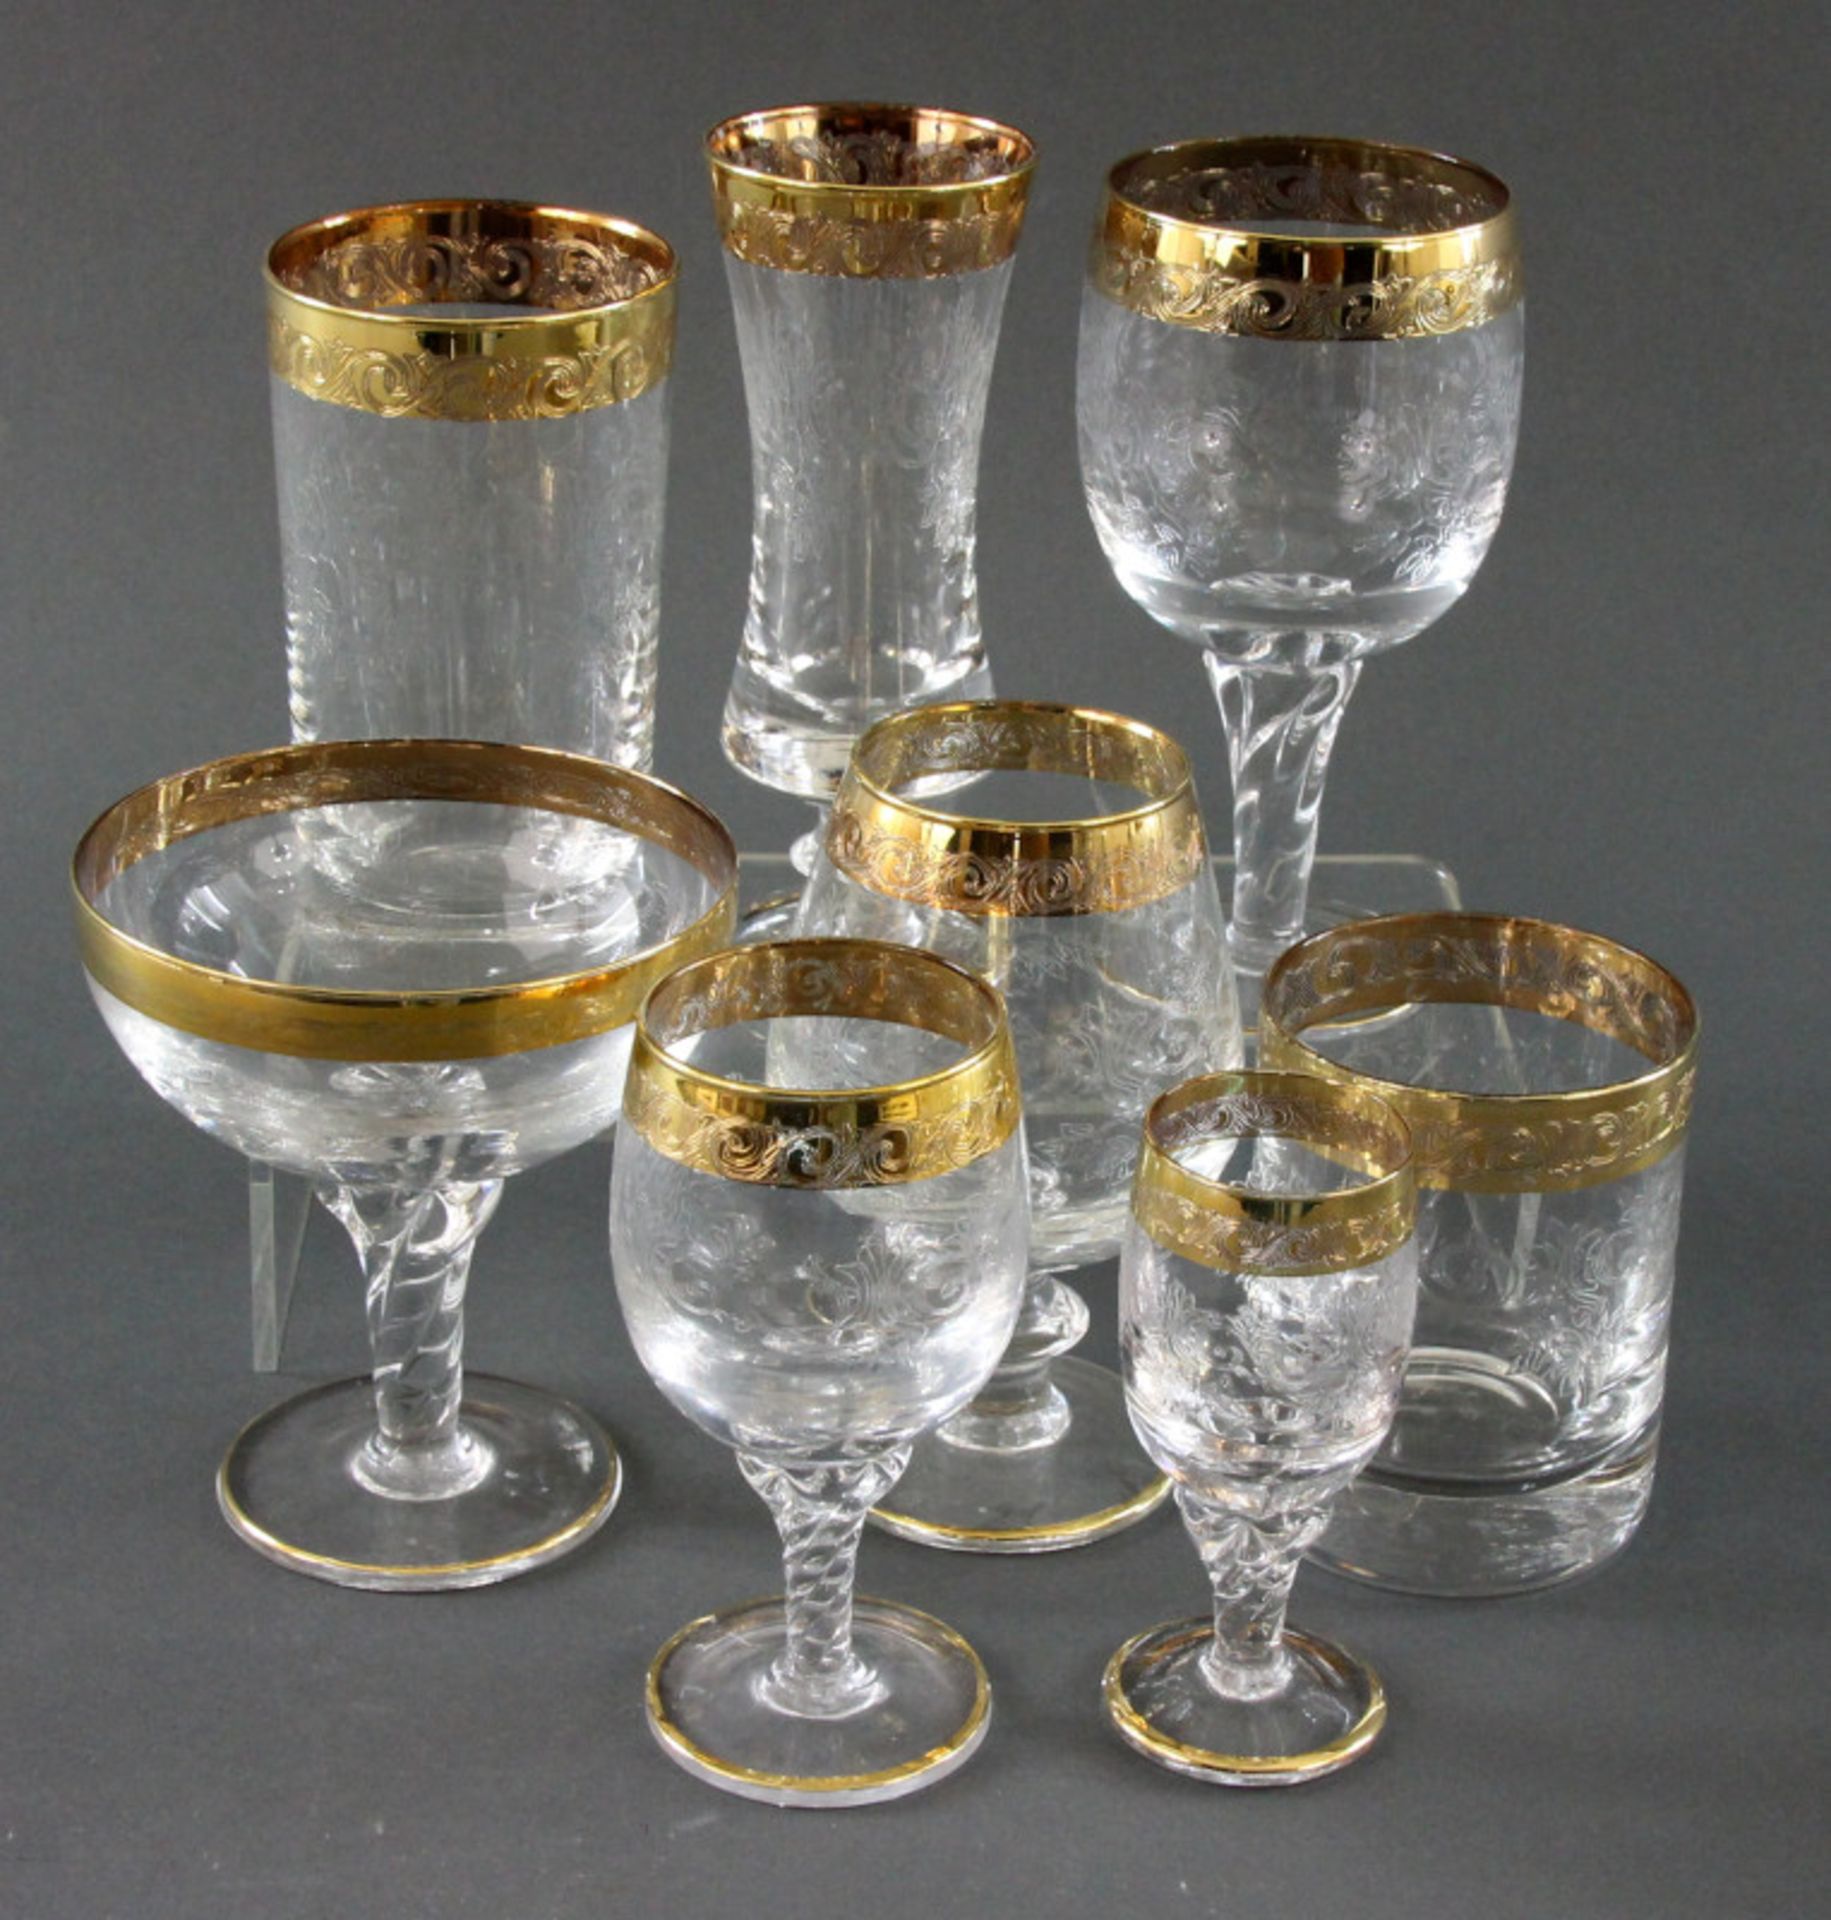 Konvolut von 45 Gläsern mit florentinisch graviertem Goldrand, der Glasmanufaktur Murano, 20. Jhd. - Image 2 of 2